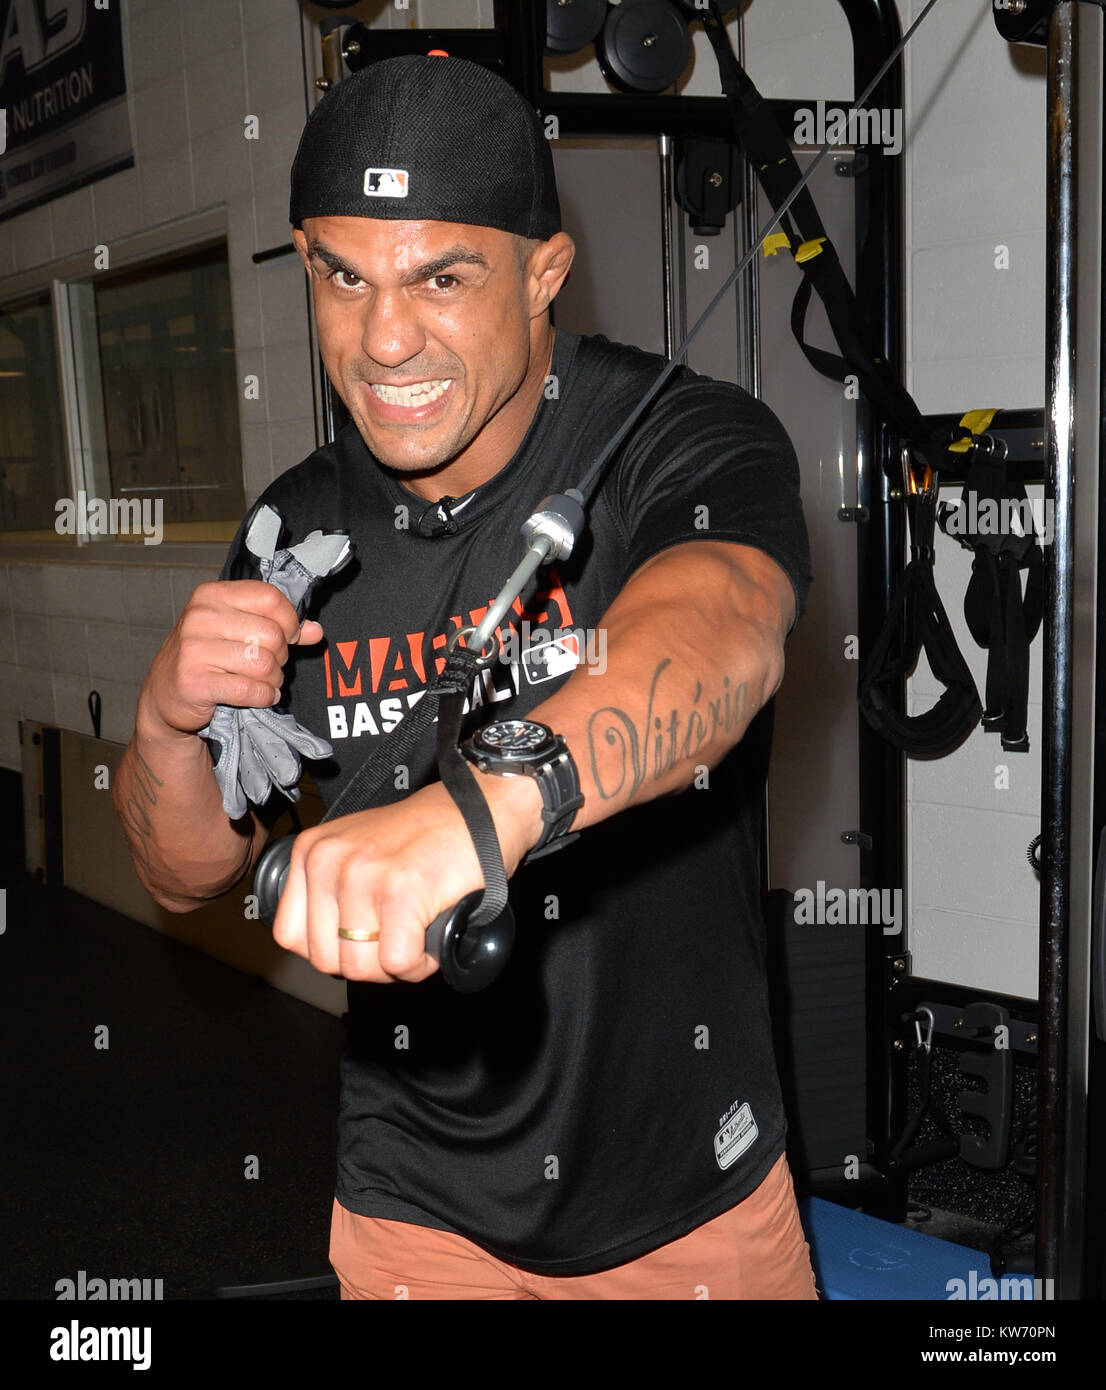 MIAMI, FL - 19 de agosto: (Cobertura Exclusiva) luchador de UFC Vitor  Belfort paga una visita a sus amigos Marlin de Miami y agarra un recorte  rápido en Headzup con los Marlins